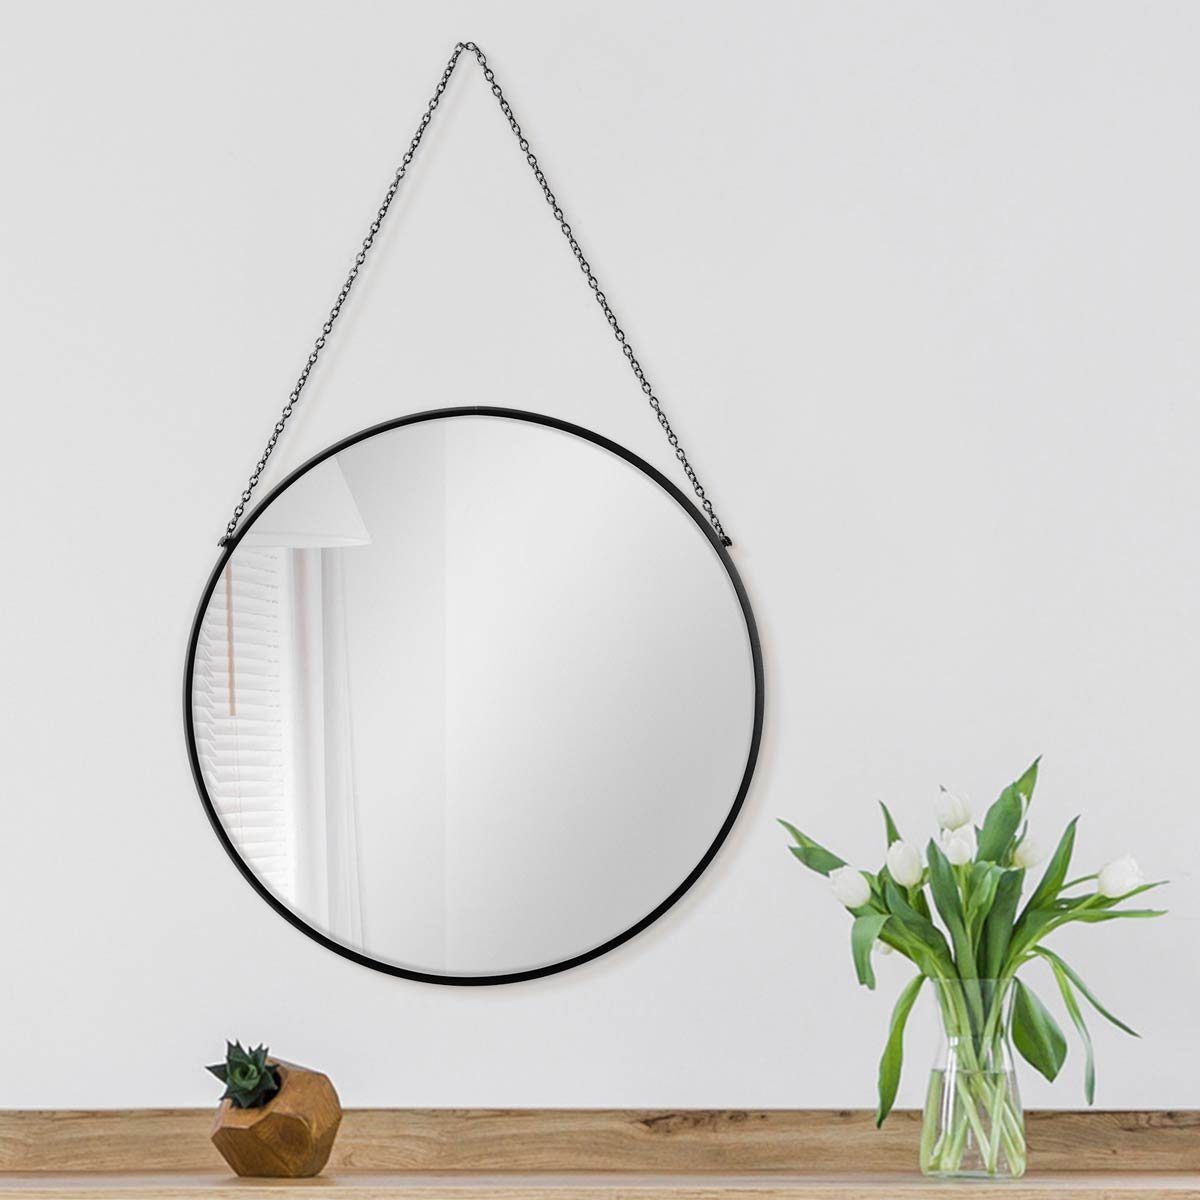 Spiegel schmalem rund Wandspiegel 50 cm Kettenaufhängung, Metallrahmen und PHOTOLINI mit Schwarz